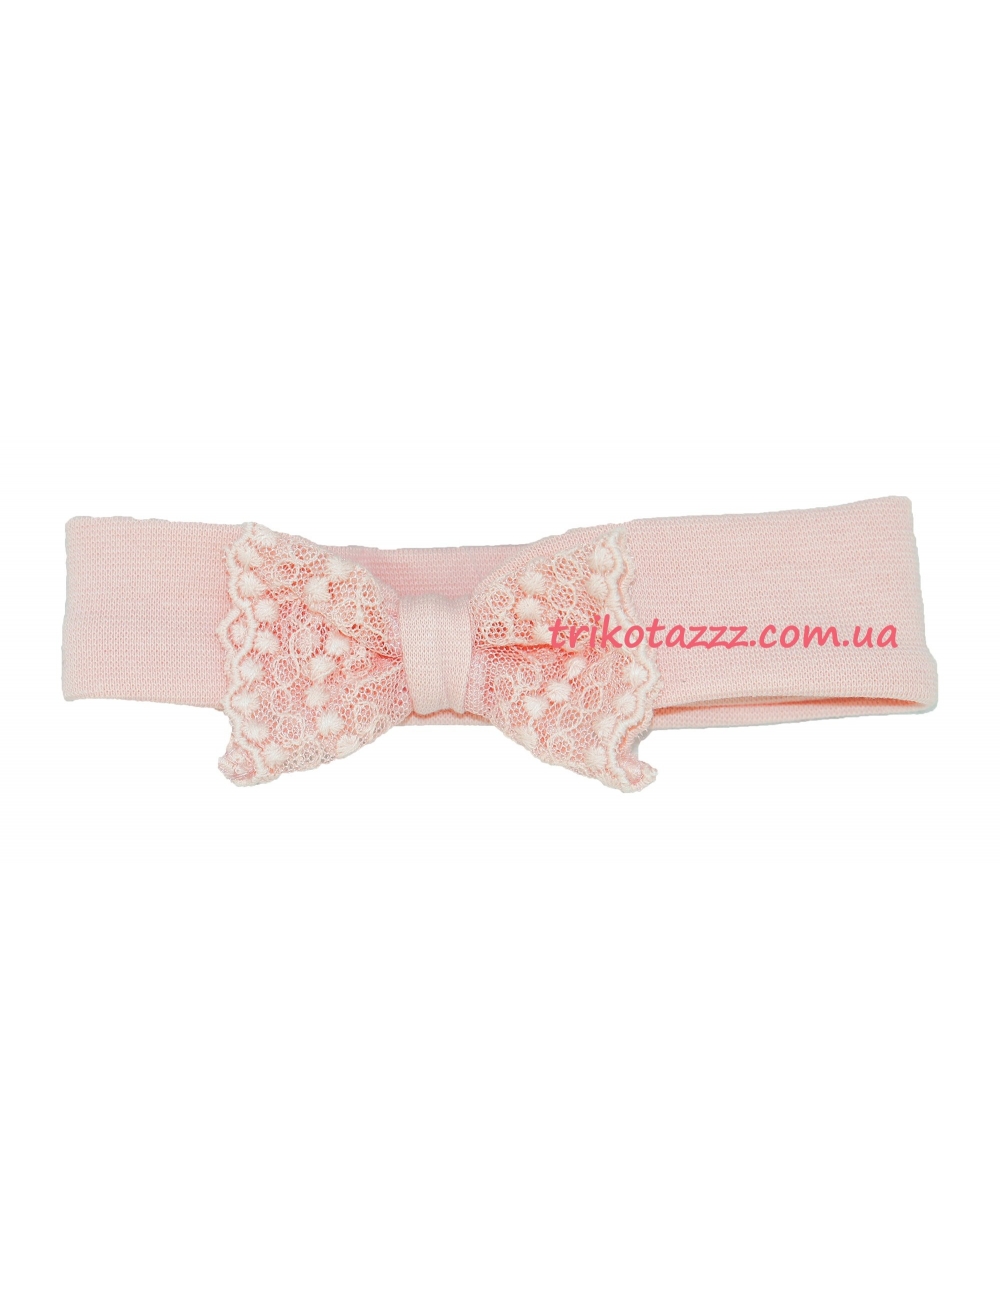 Праздничная повязка на голову для девочки с кружевным бантом тм"Смил" розовая